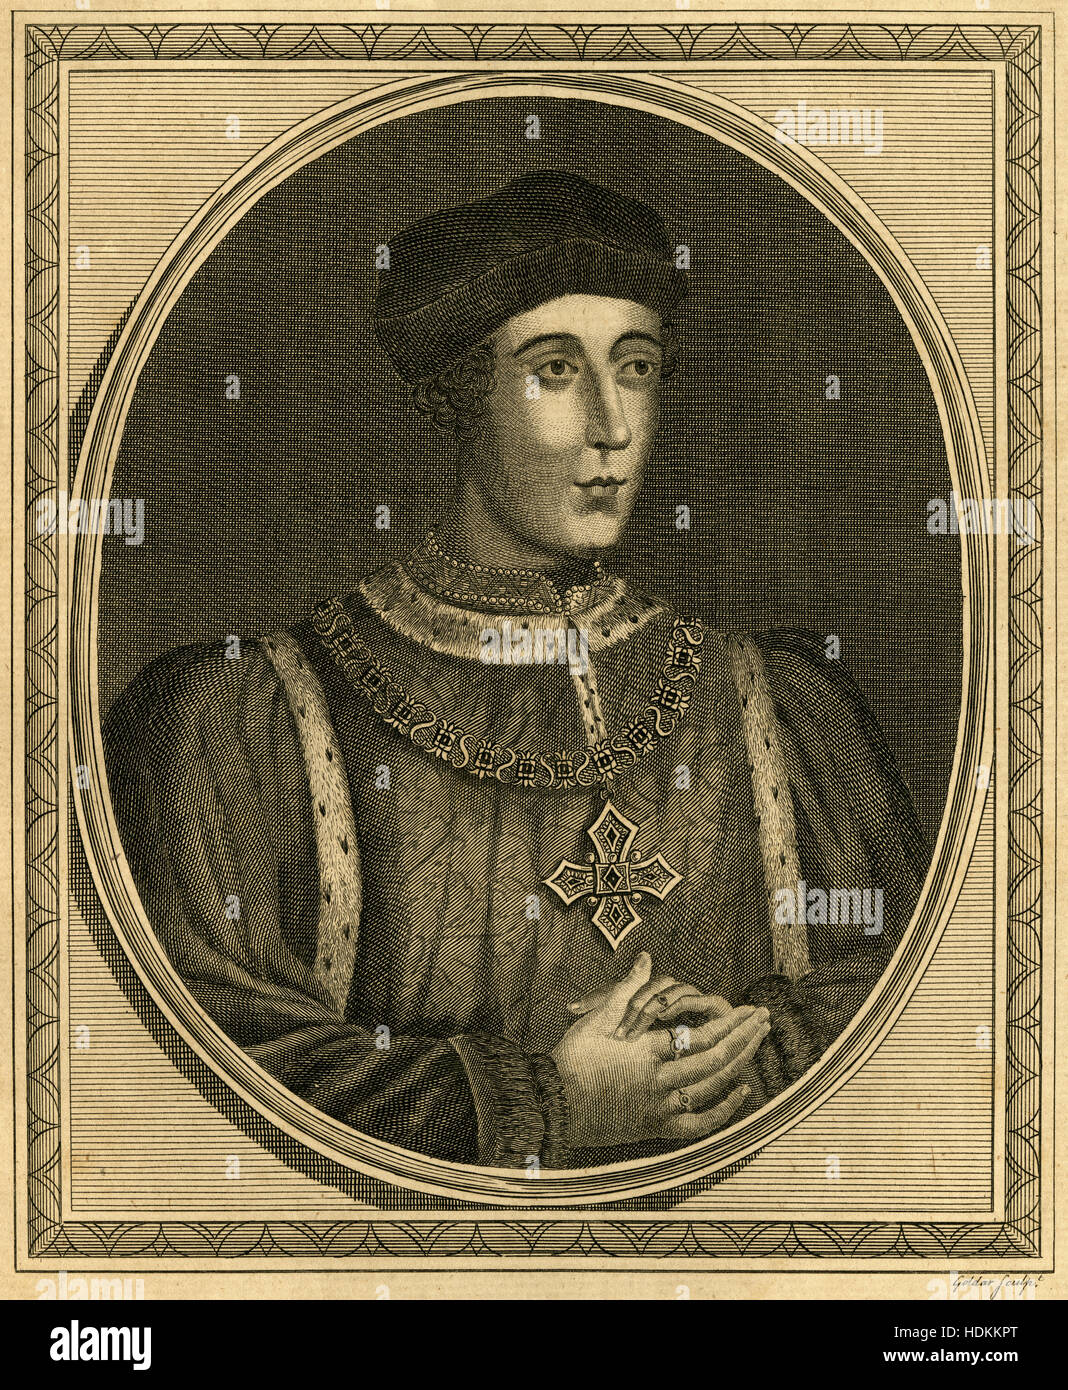 Antica incisione 1787, Re Henry VI. Enrico VI (1421-1471) era re d'Inghilterra dal 1422 al 1461 e di nuovo dal 1470 al 1471, e contestato il Re di Francia dal 1422 al 1453. Fonte: incisione originale. Foto Stock